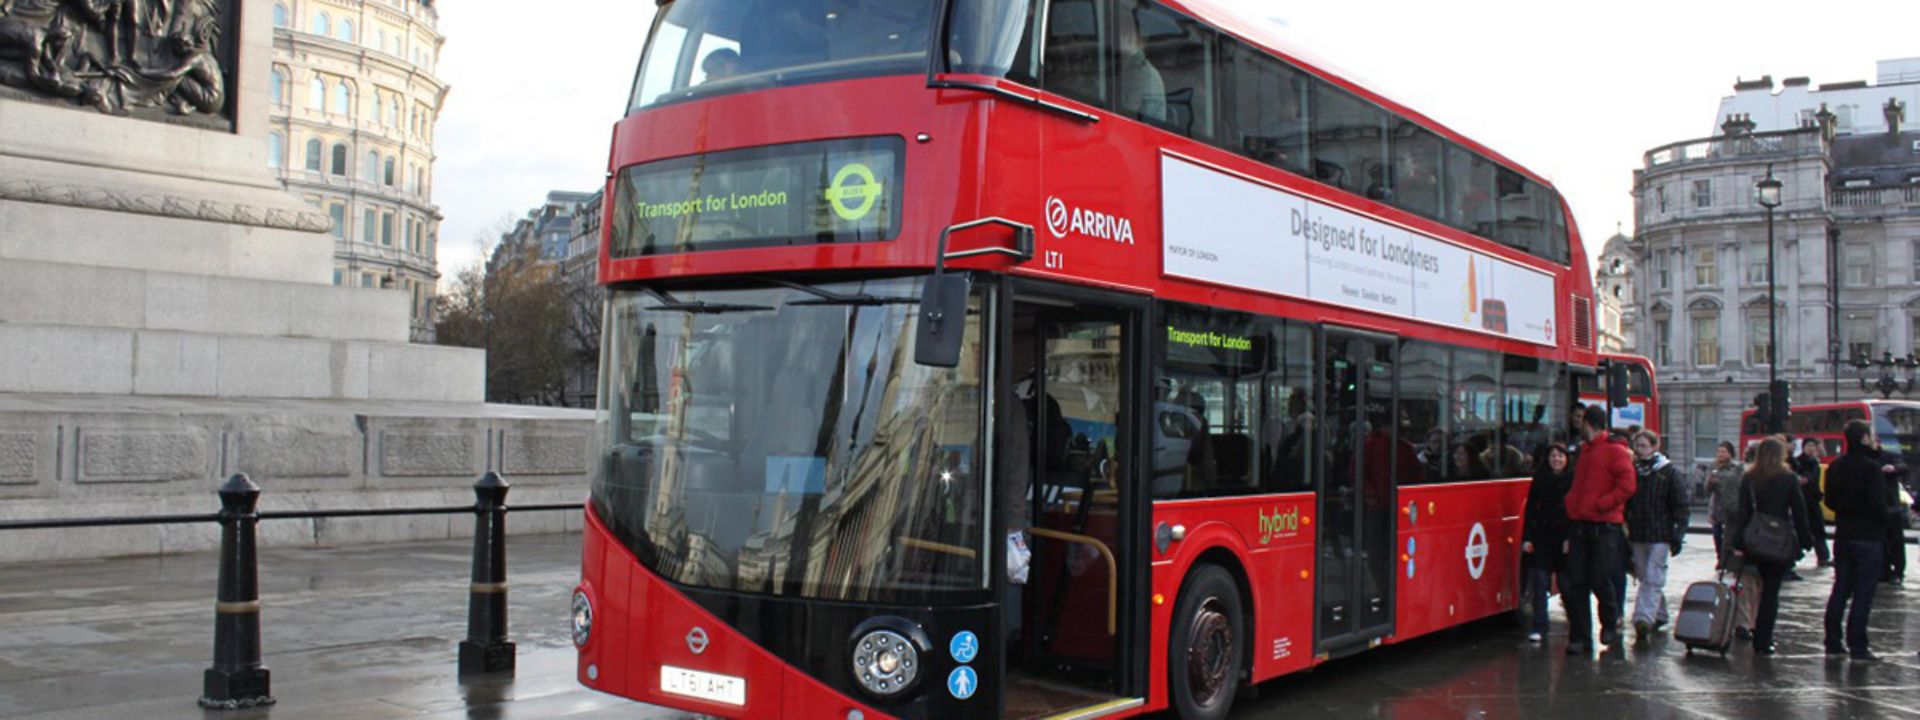 New Bus for London - Seit Frühjahr 2012 sind bei Arriva London die ersten Exemplare der neuen Hybridbus-Serie in Dienst gestellt